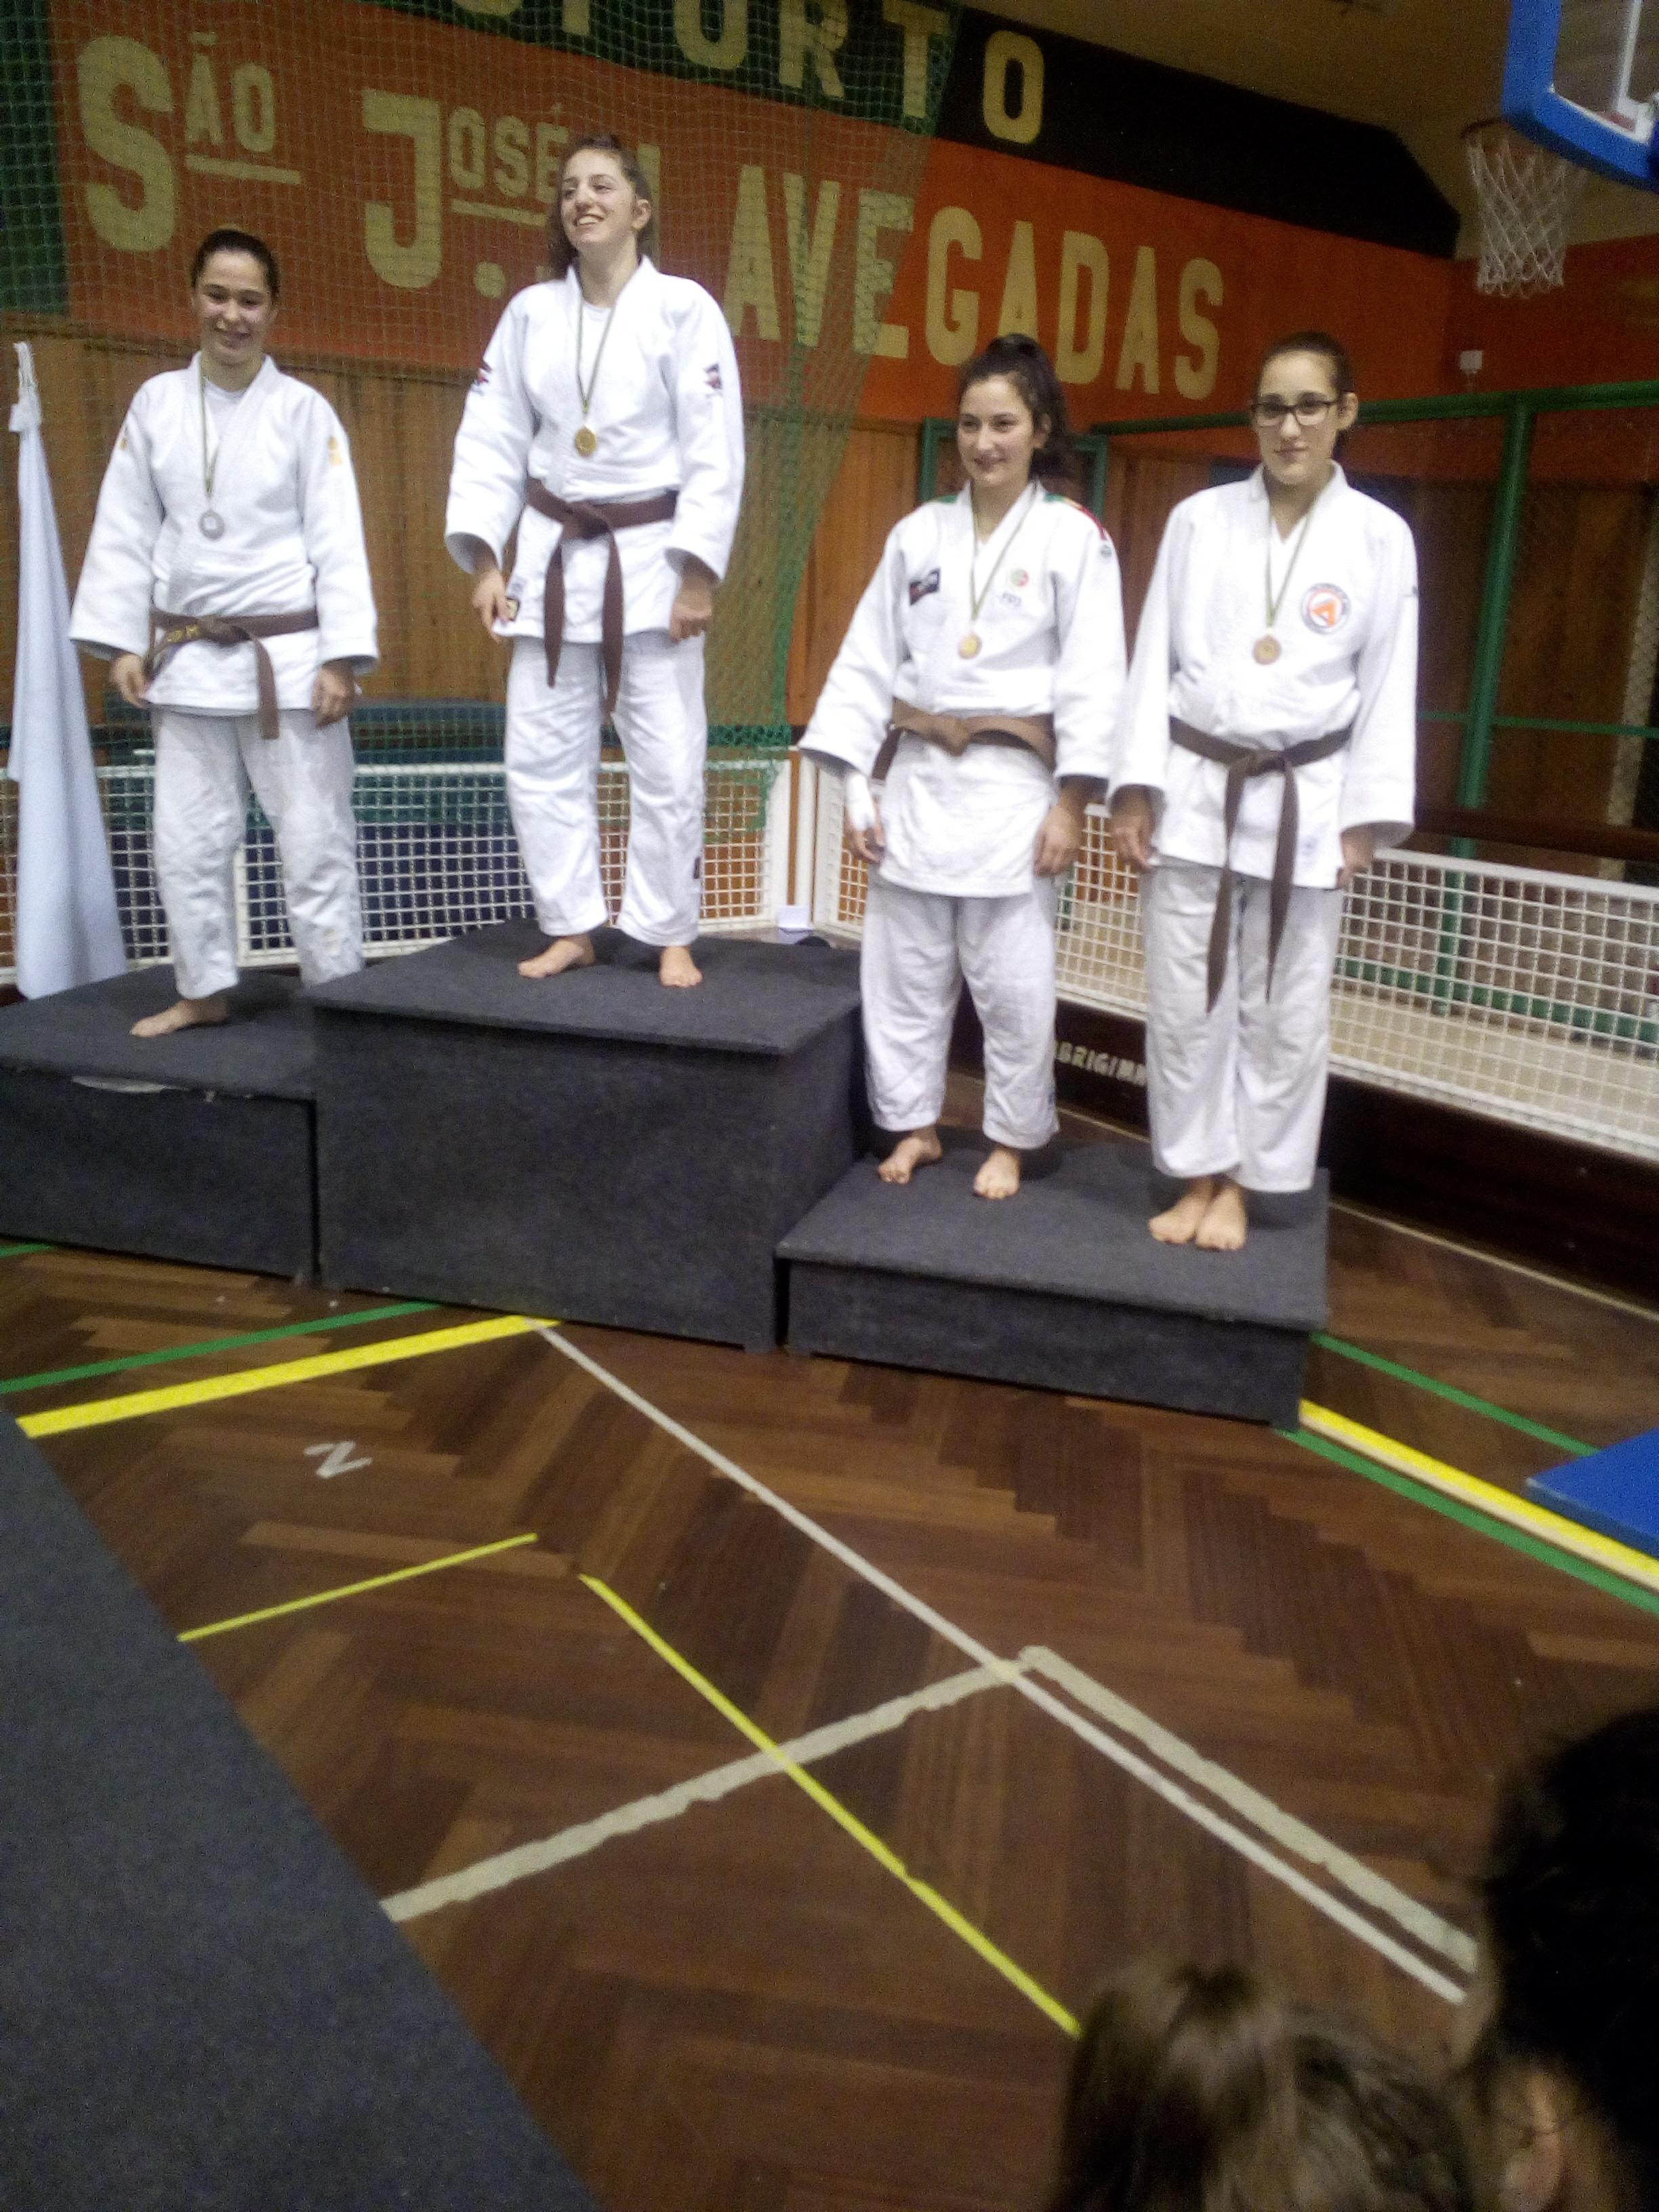 Castelo Branco: Judocas da Academia de Judo conseguem bons resultados em Open de Vila Nova de Poiares